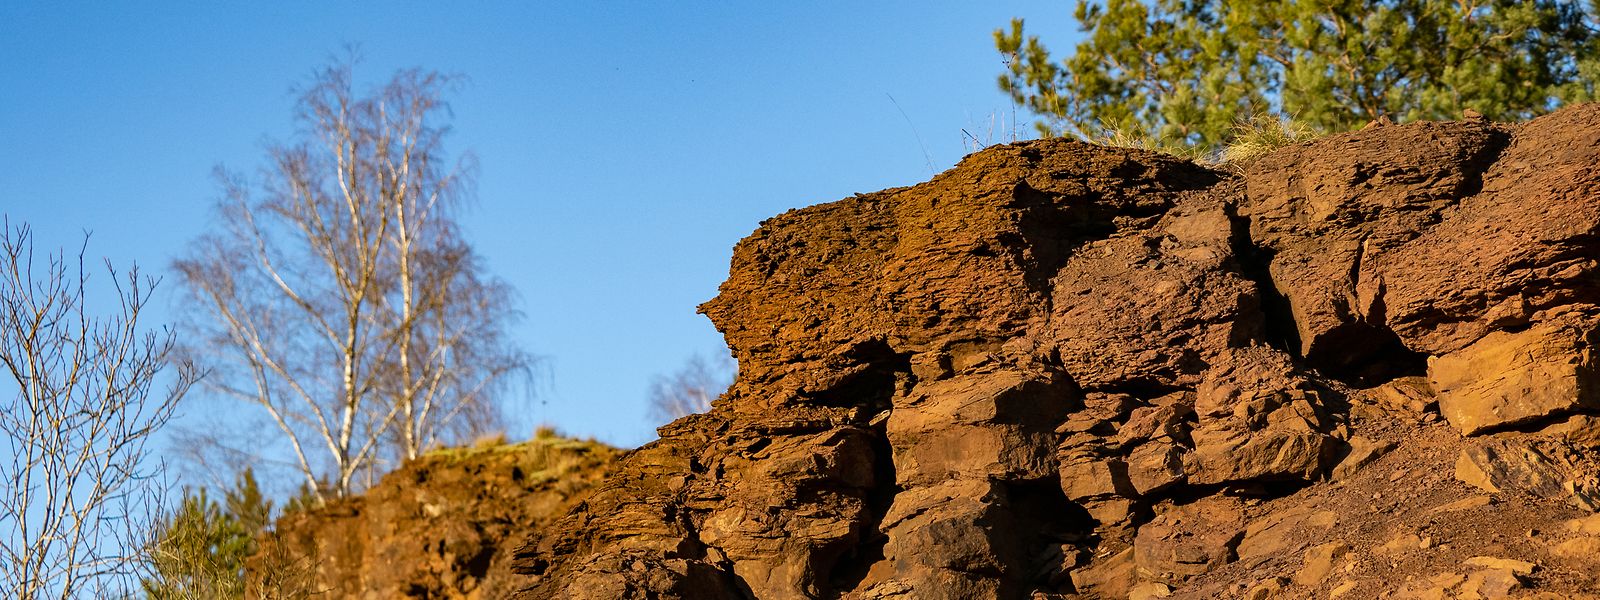 Le Grand Canyon en miniature : les roches rouges sont l'emblème de l'ancienne région industrielle du sud du Luxembourg.